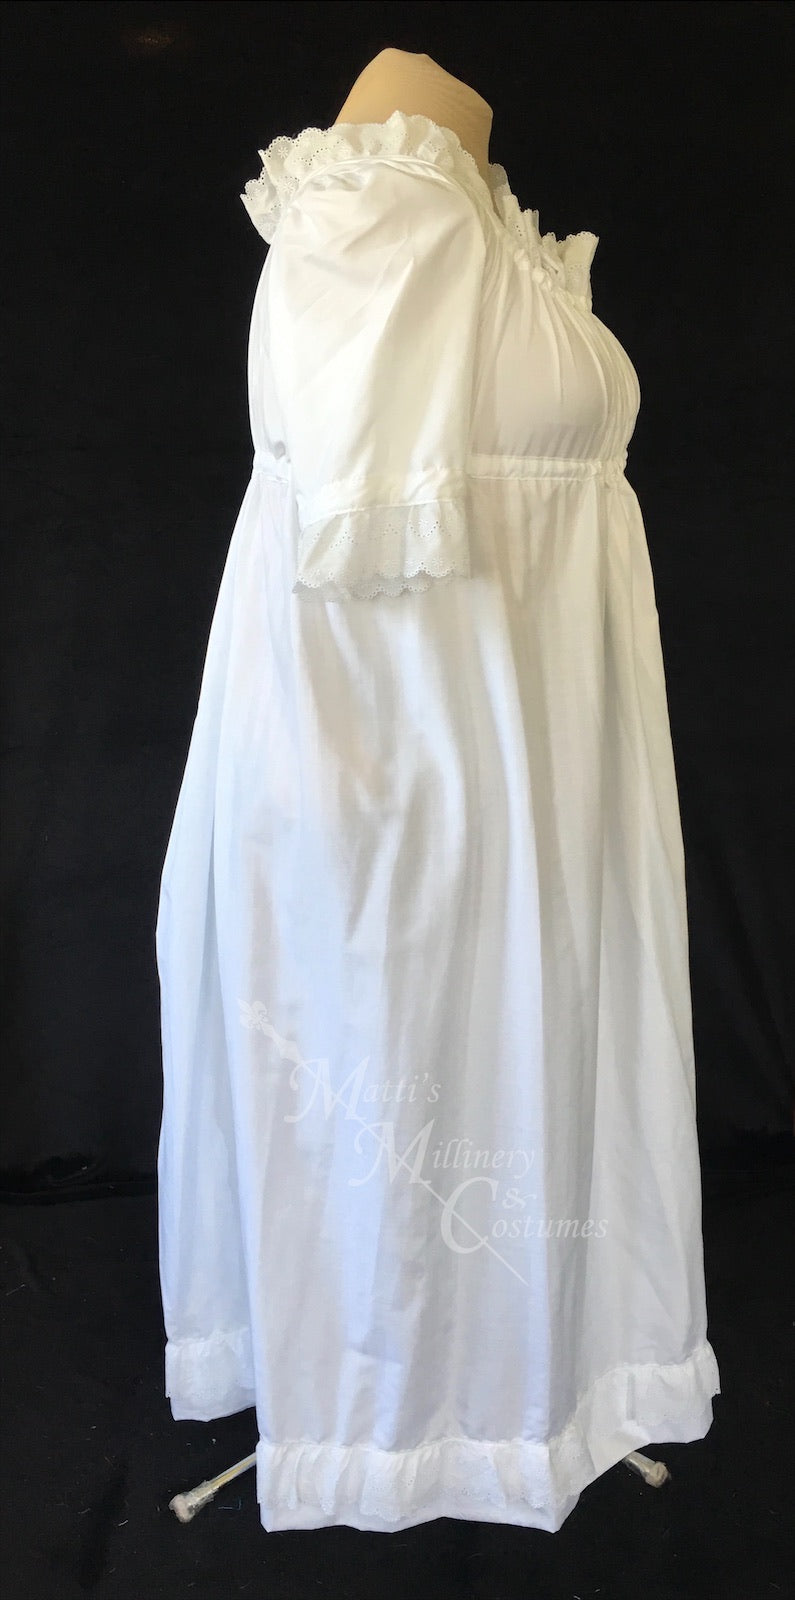 Magic White 1790s Round Gown Jane Austen Regency Day Dress in cotton